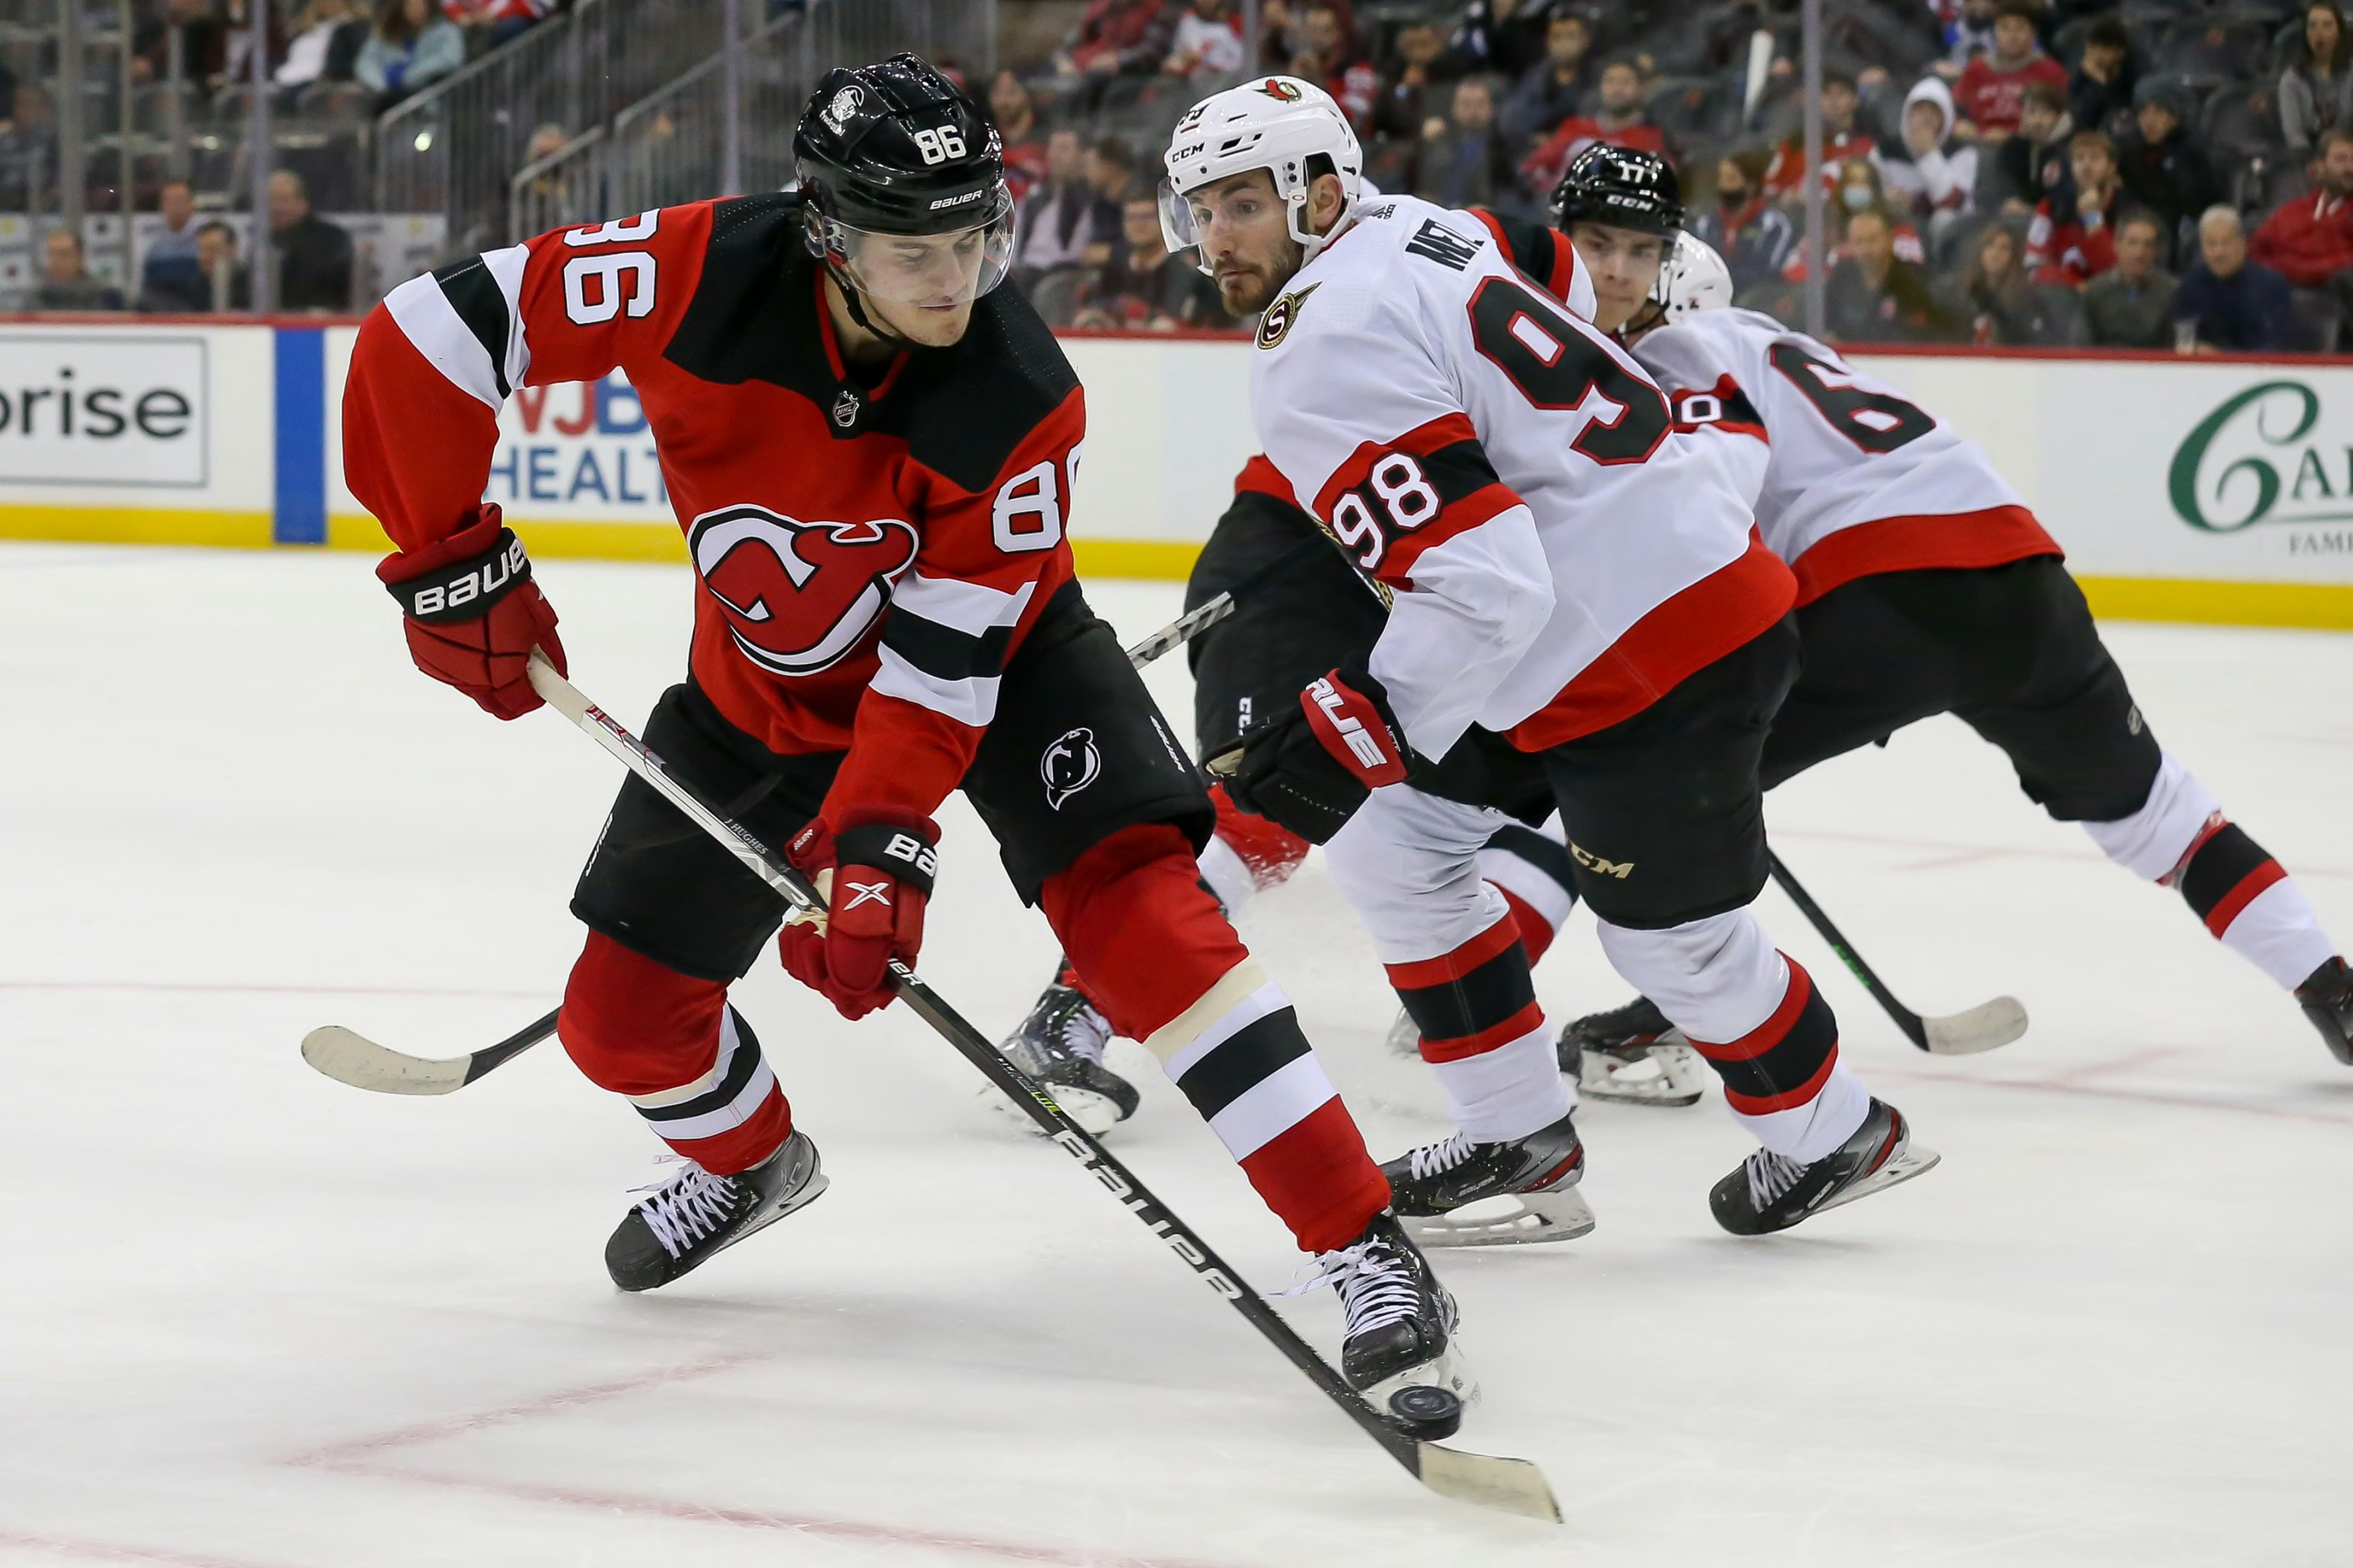 New Jersey Devils vs. Ottawa Senators (2/7/22) - Stream the NHL